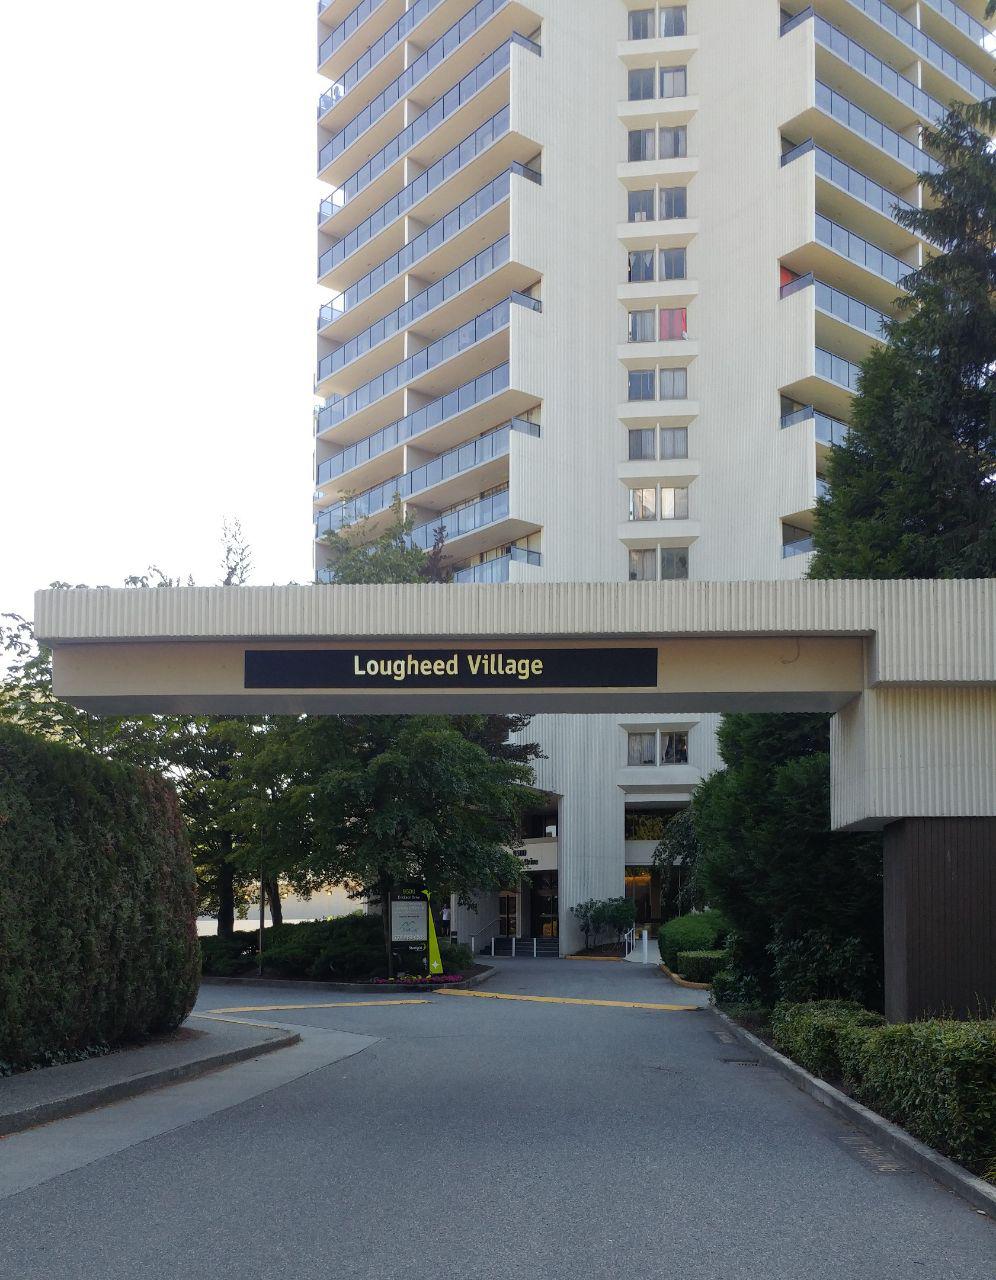 Lougheed Village Dental | 9524 Erickson Dr, Burnaby, BC V3J 1M9, Canada | Phone: (604) 421-2132